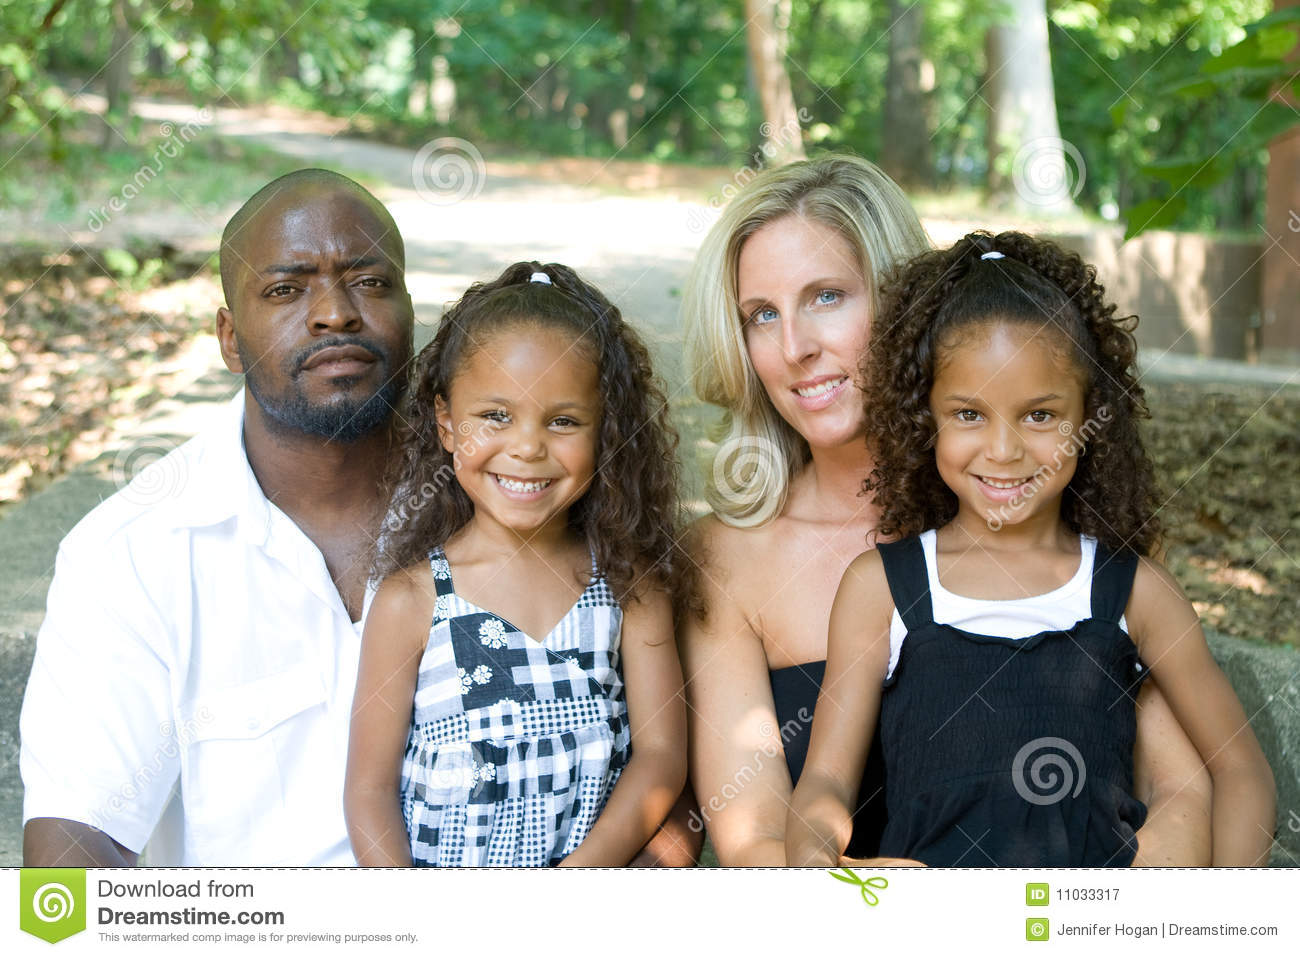 сын белой женщины и негра женился на белой женщине может ли ребенок быть темнее своего фото 104